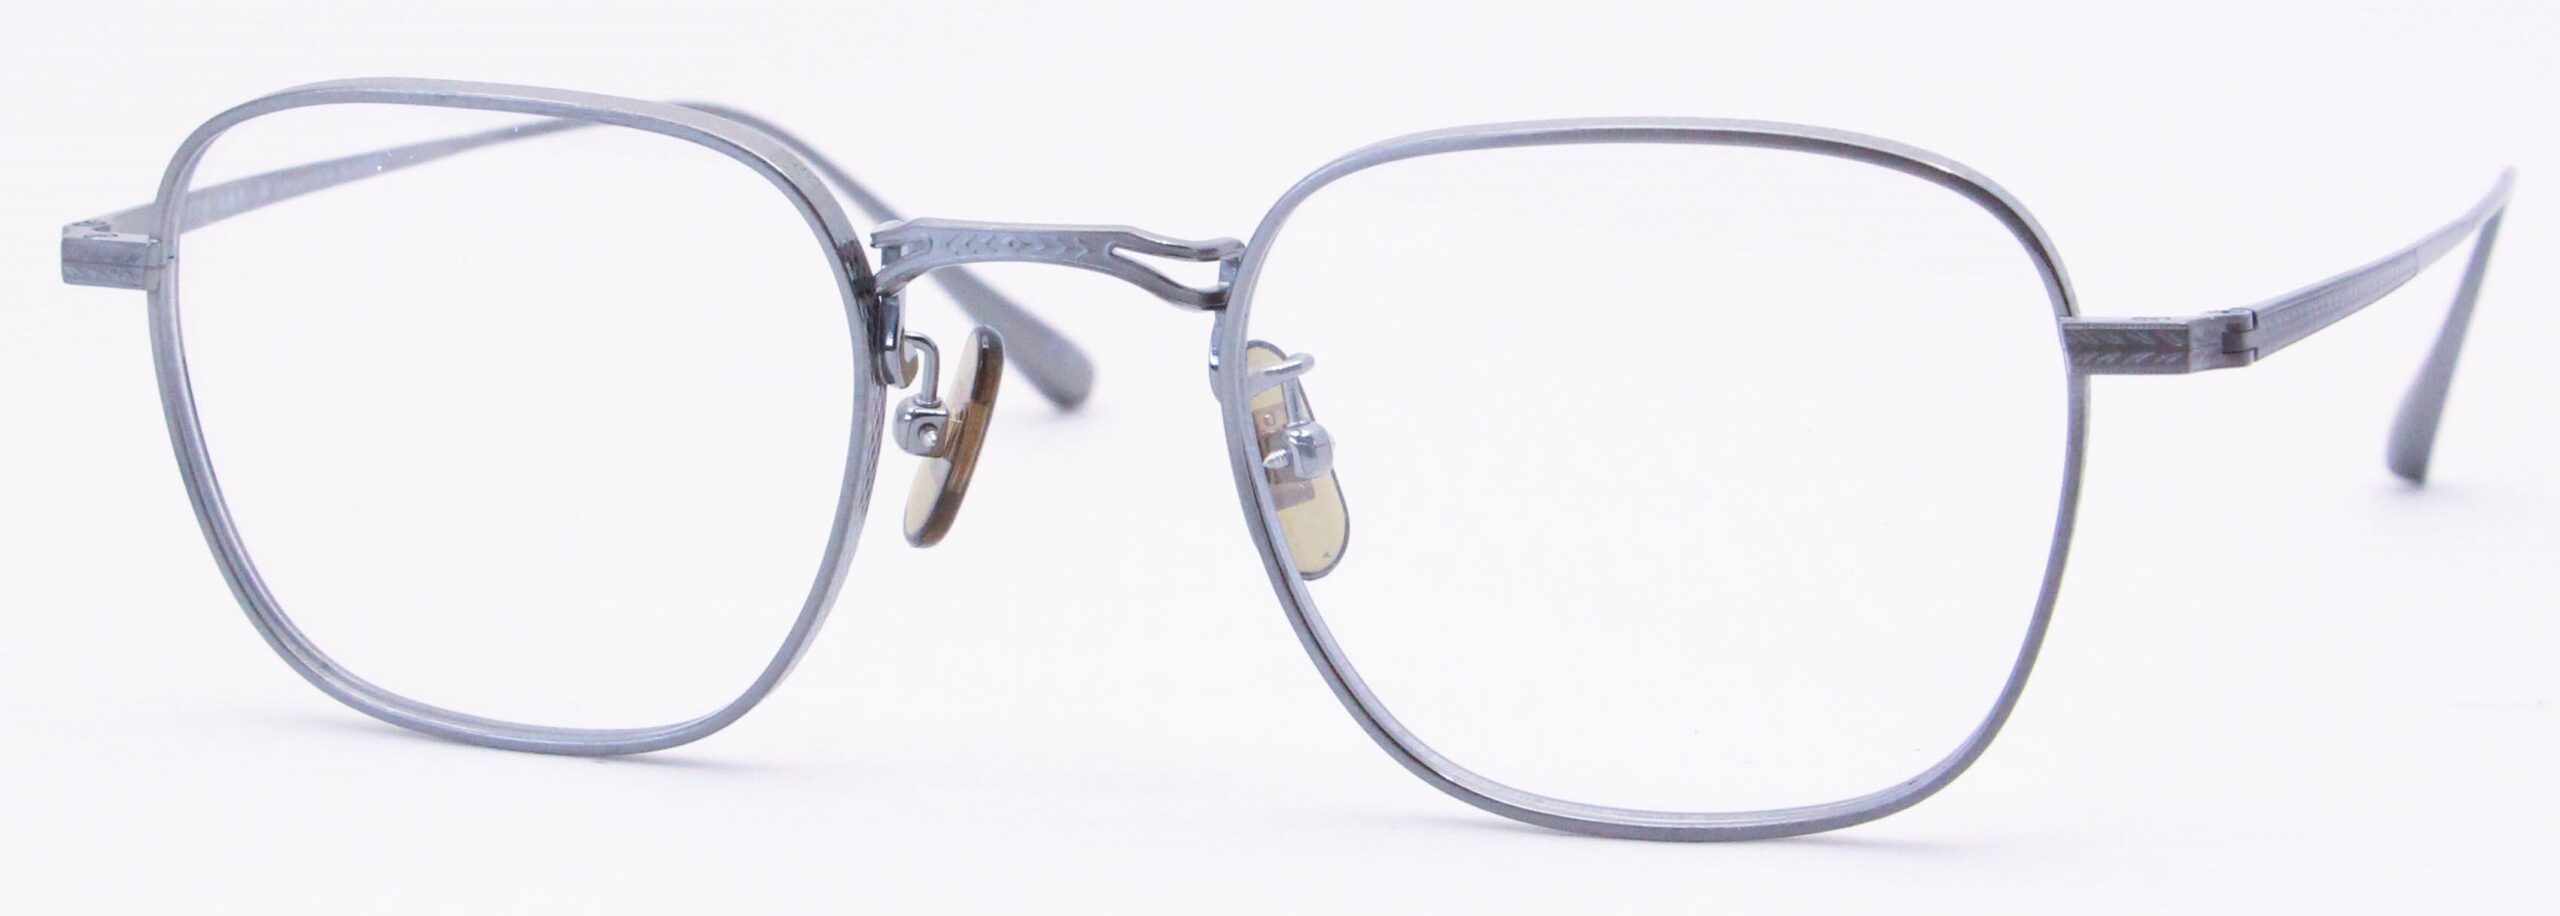 眼鏡のカラータイプC-7 Gray